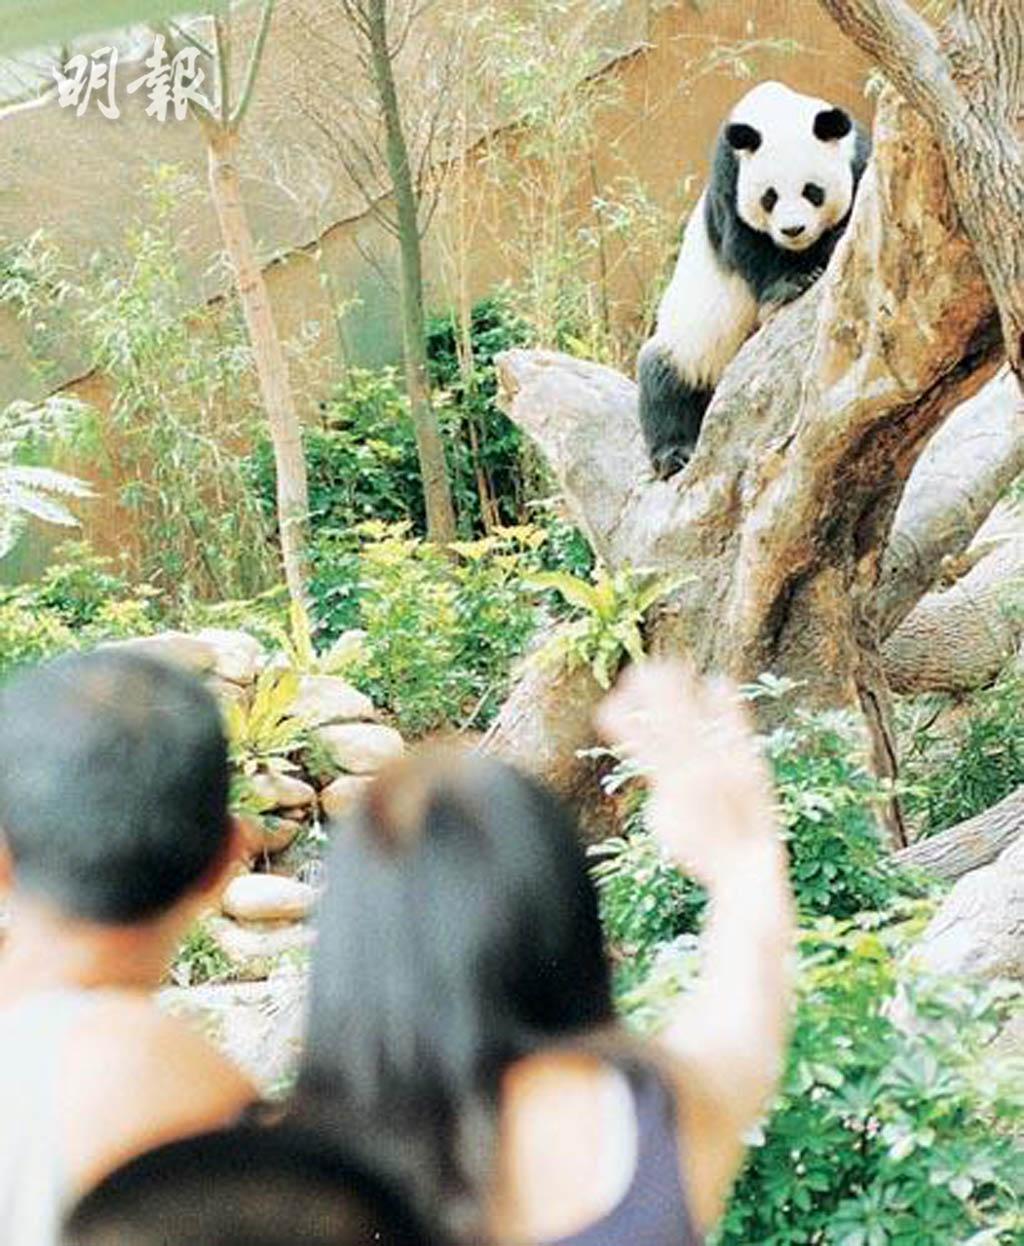 人类照顾下最长寿雄性大熊猫 安安安乐死